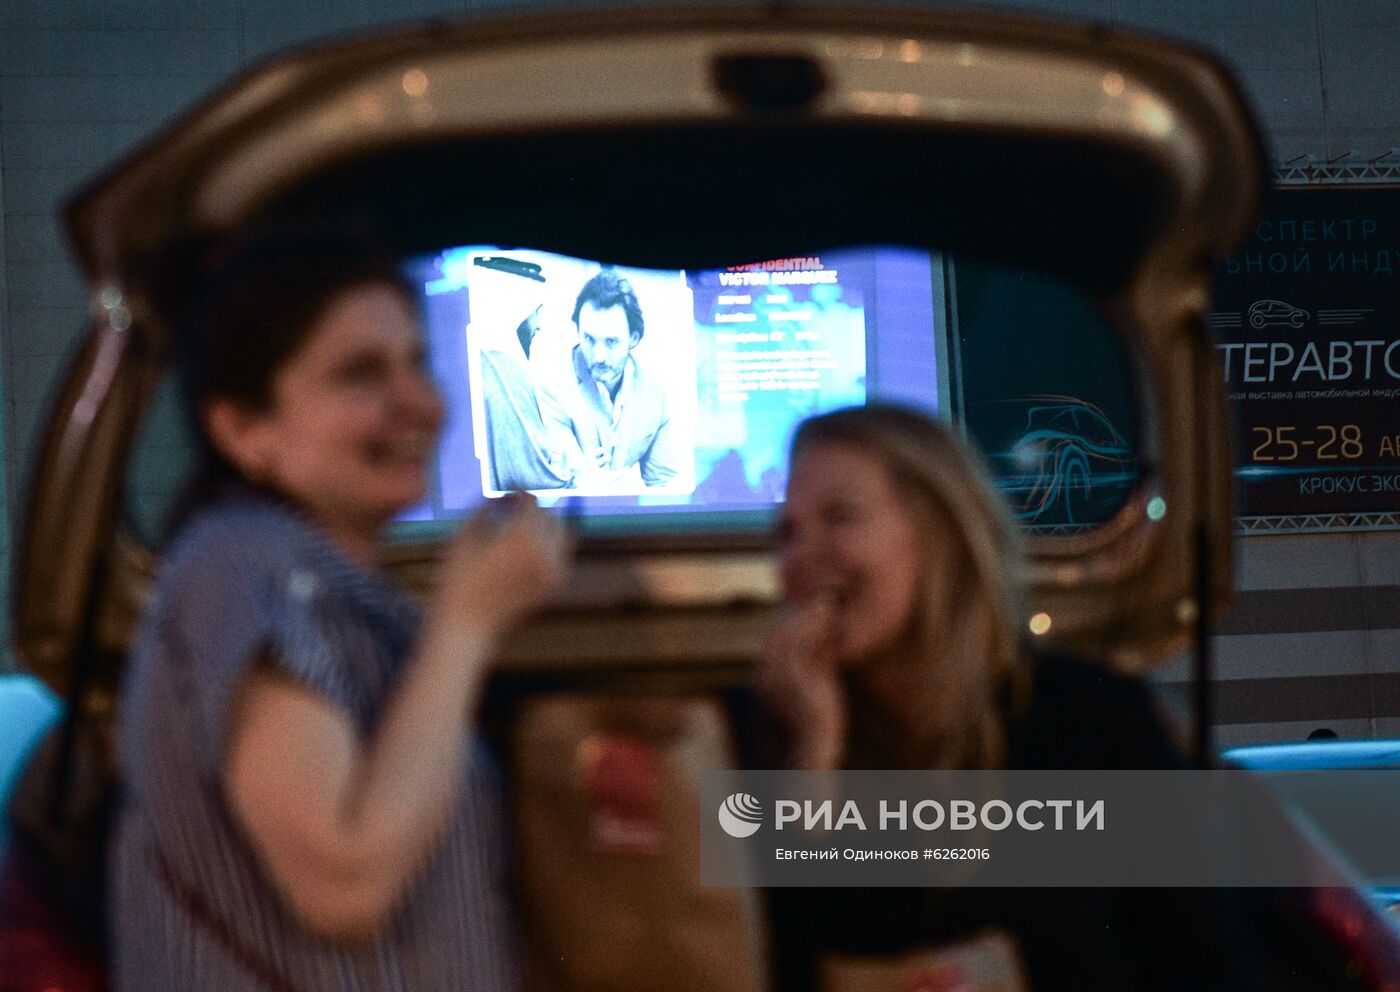 Открытие первого автокинотеатра сети "Каро" в Москве